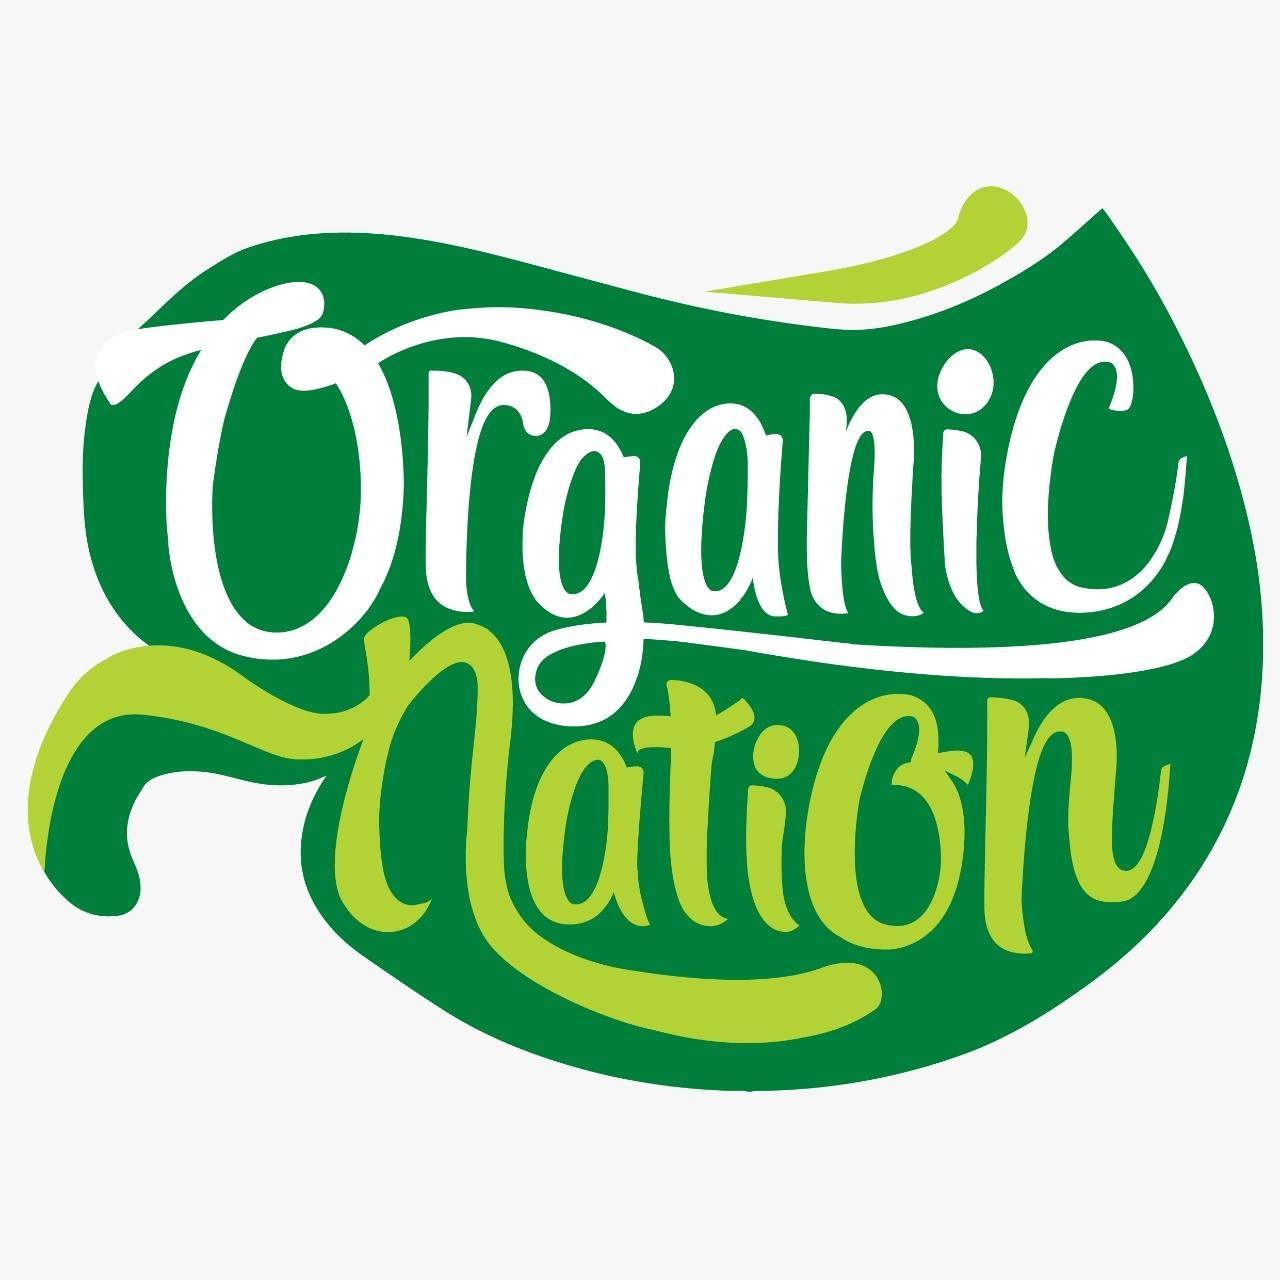 أورجانيك نيشن Organic Nation